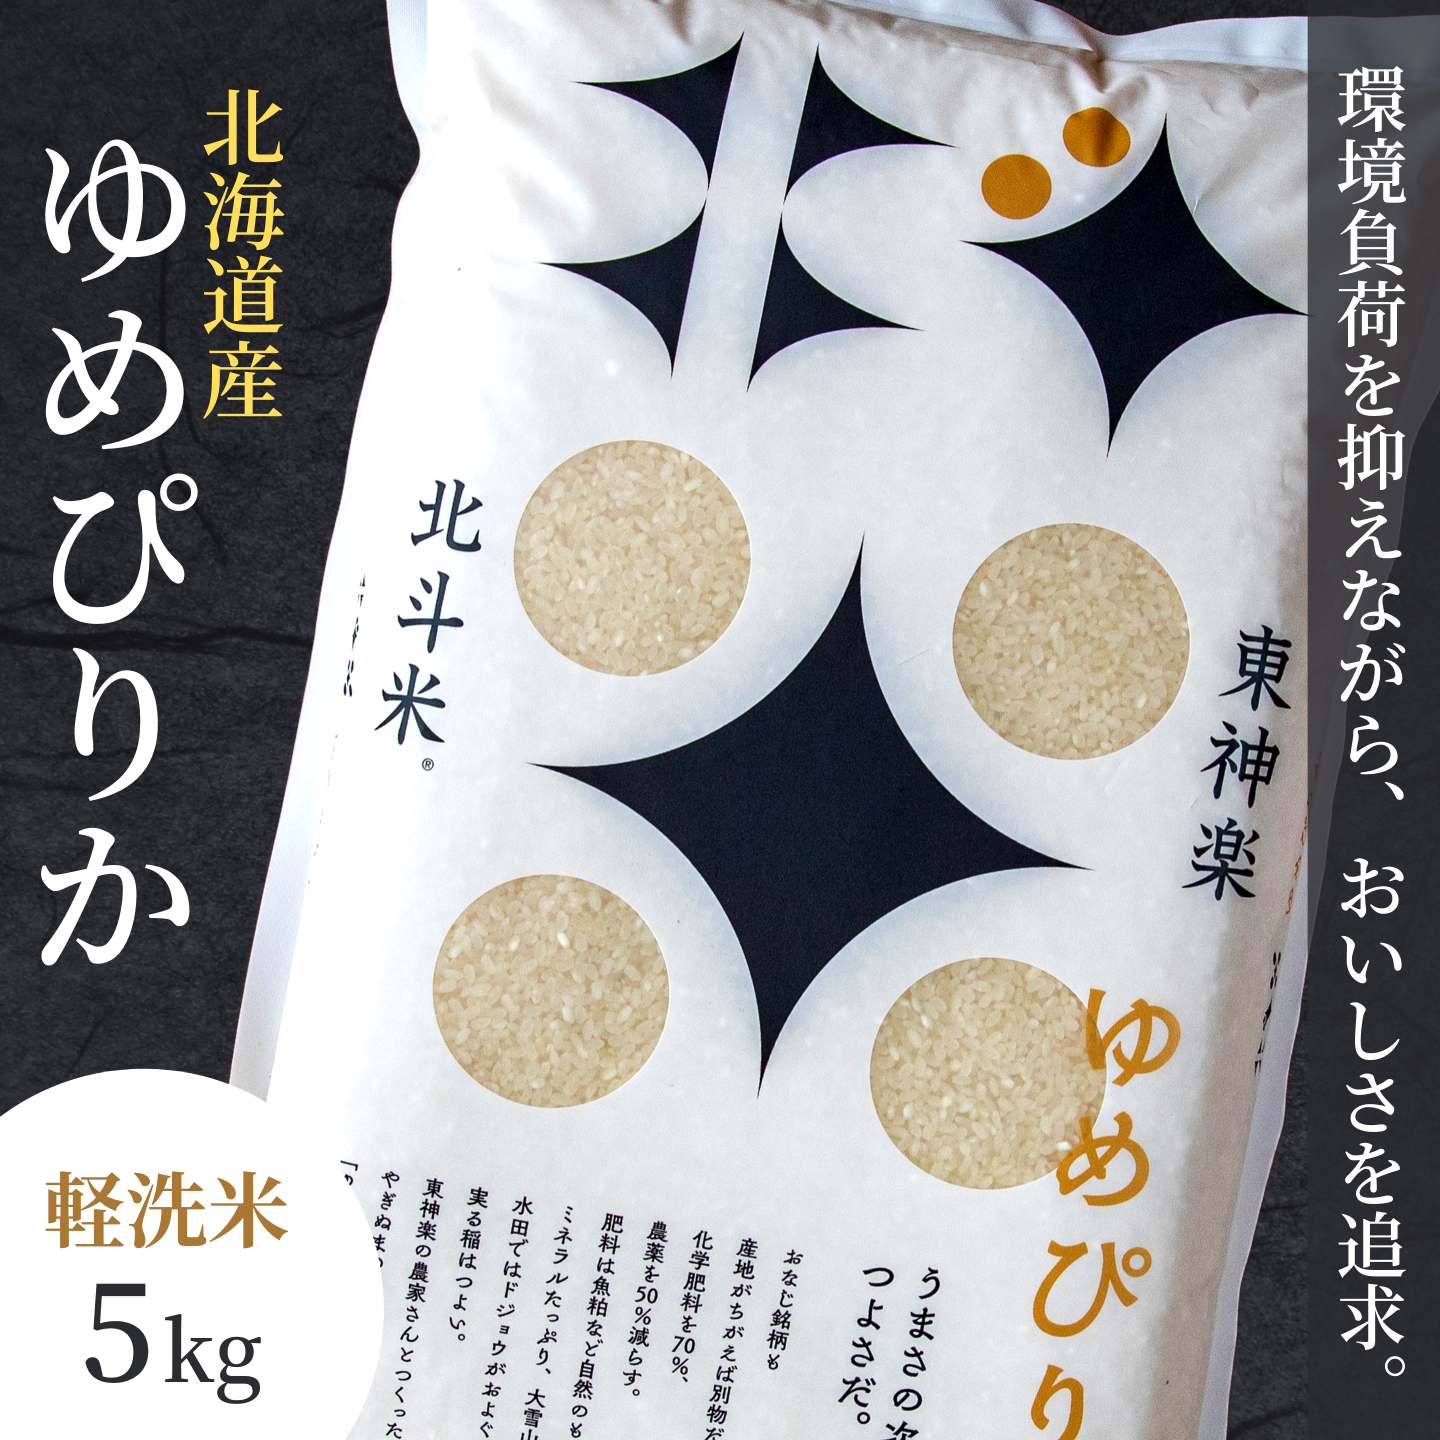 【軽く洗うだけでOK】【令和5年産米】北海道産ゆめぴりか  軽洗米(精米)10kg(5kg×2袋) 